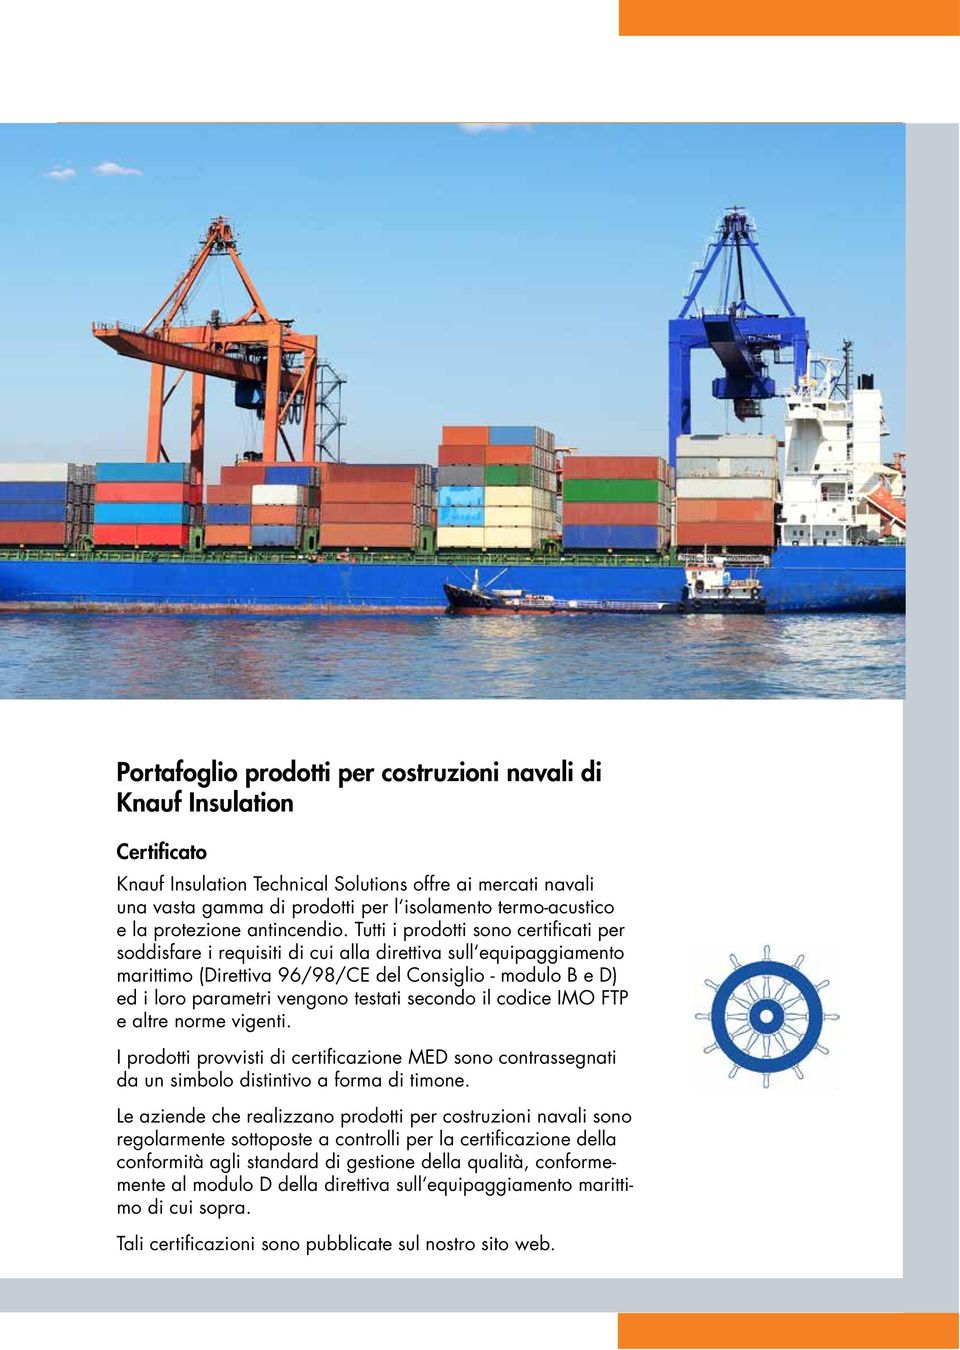 Tutti i prodotti sono certificati per soddisfare i requisiti di cui alla direttiva sull equipaggiamento marittimo (Direttiva 96/98/CE del Consiglio - modulo B e D) ed i loro parametri vengono testati